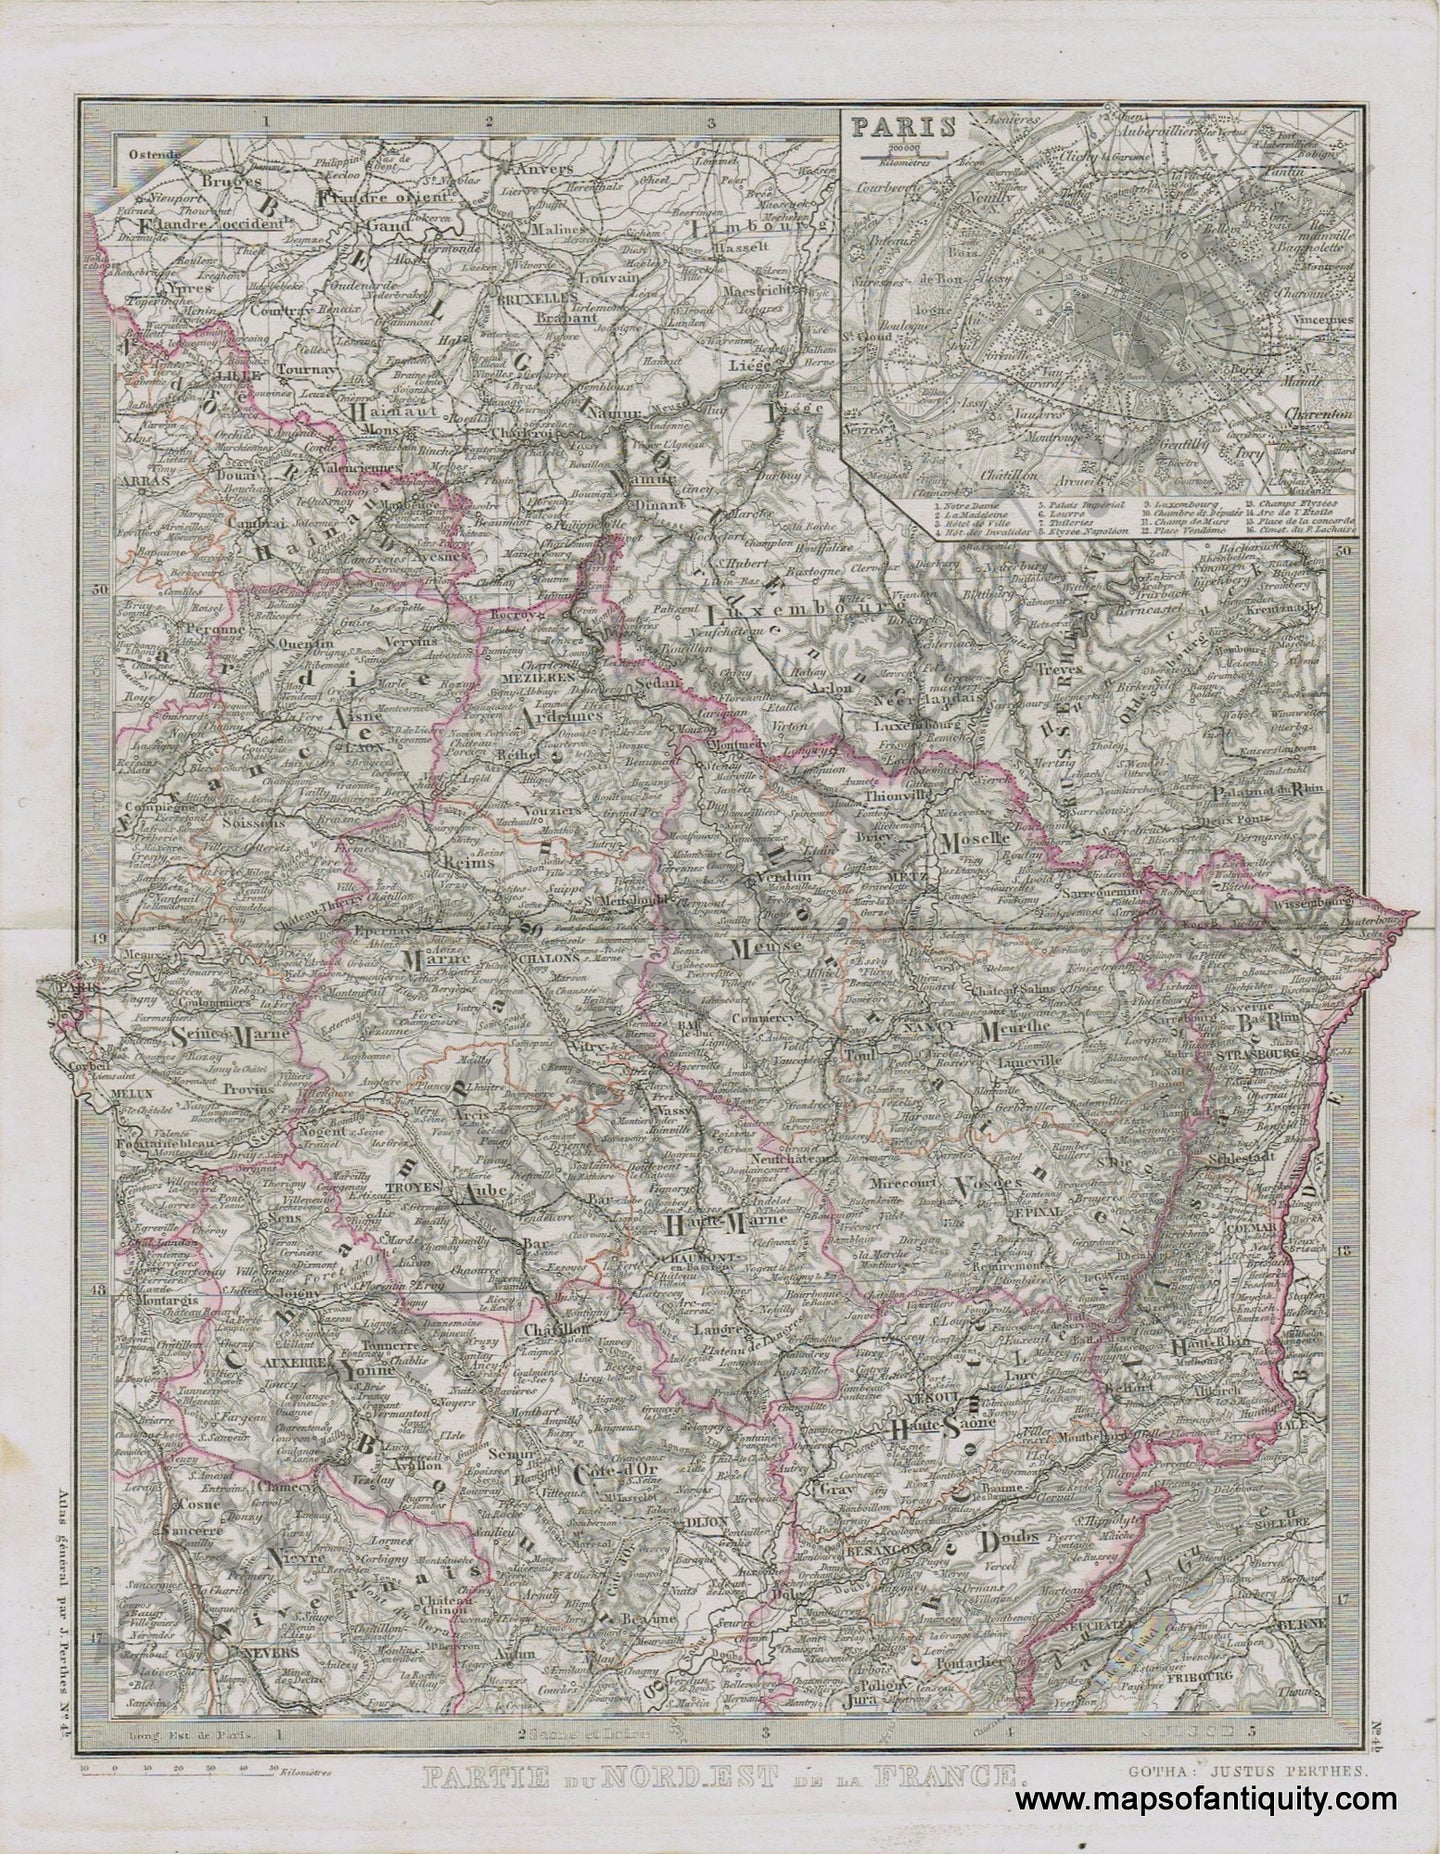 France-Partie-du-Nord-Est-de-la-France-Perthes-1871-Antique-Map-1870s-1800s-19th-century-Maps-of-Antiquity